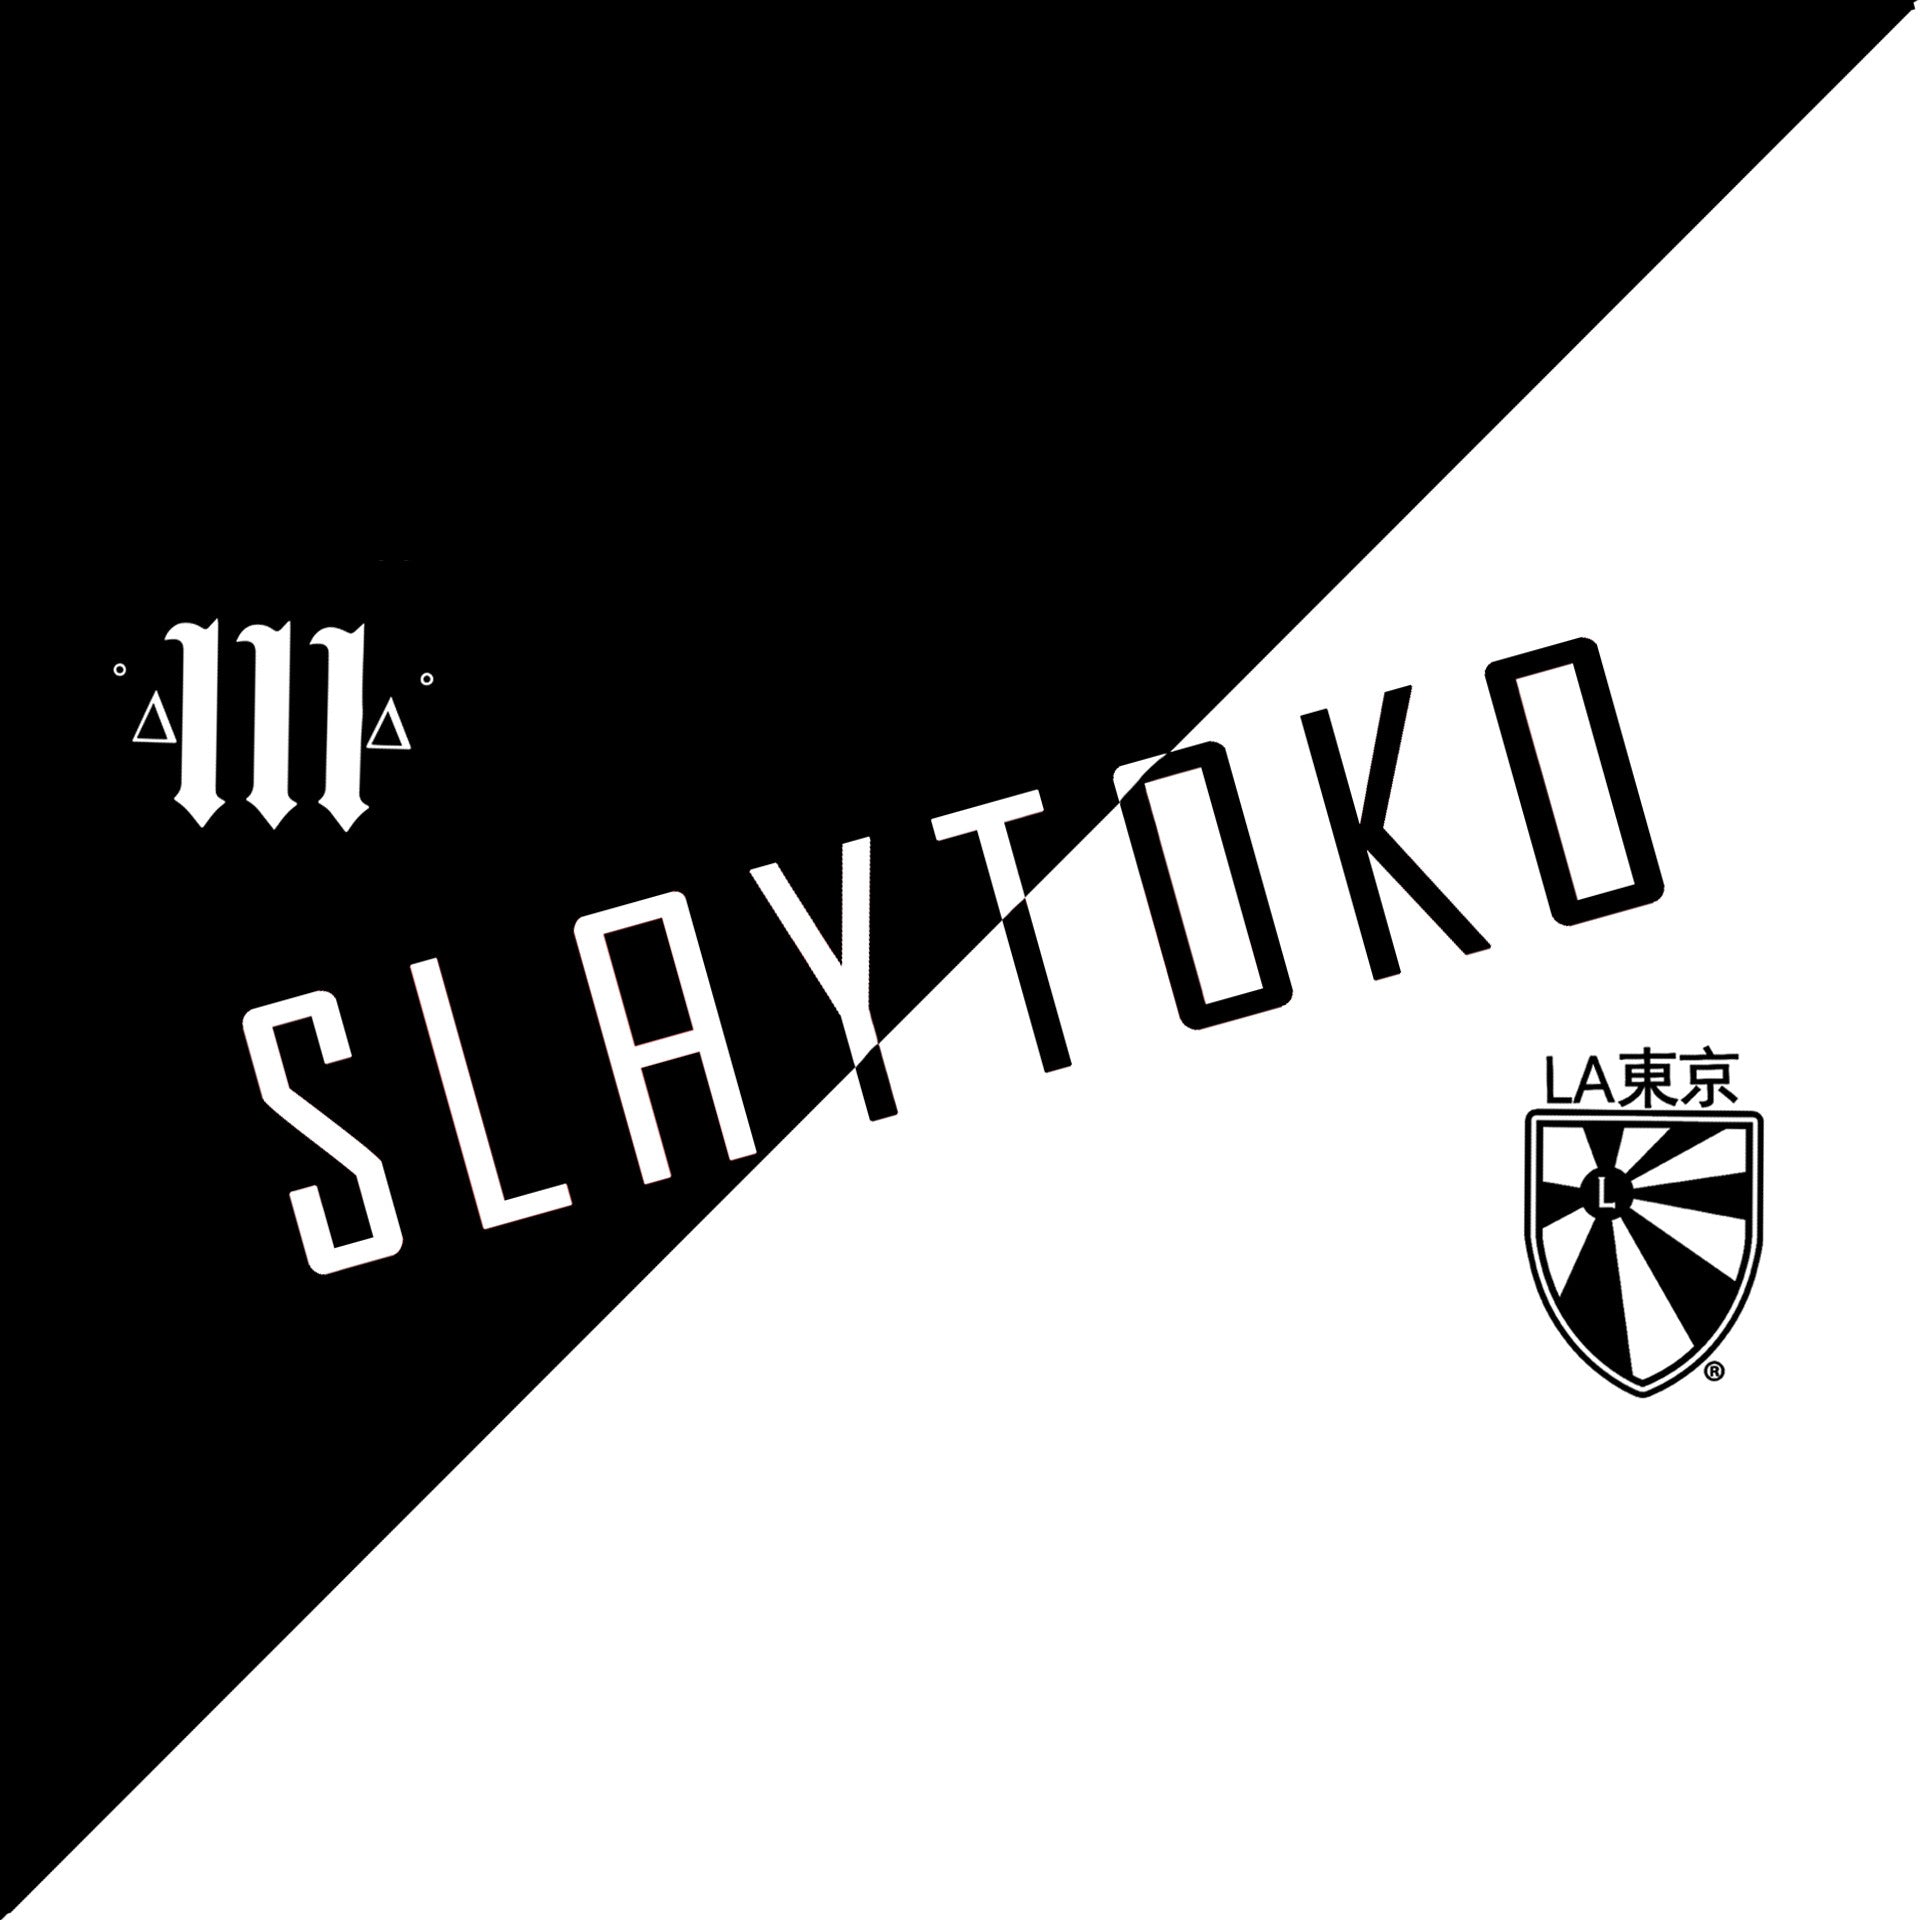 Slaytokyo Recap (Release Party)